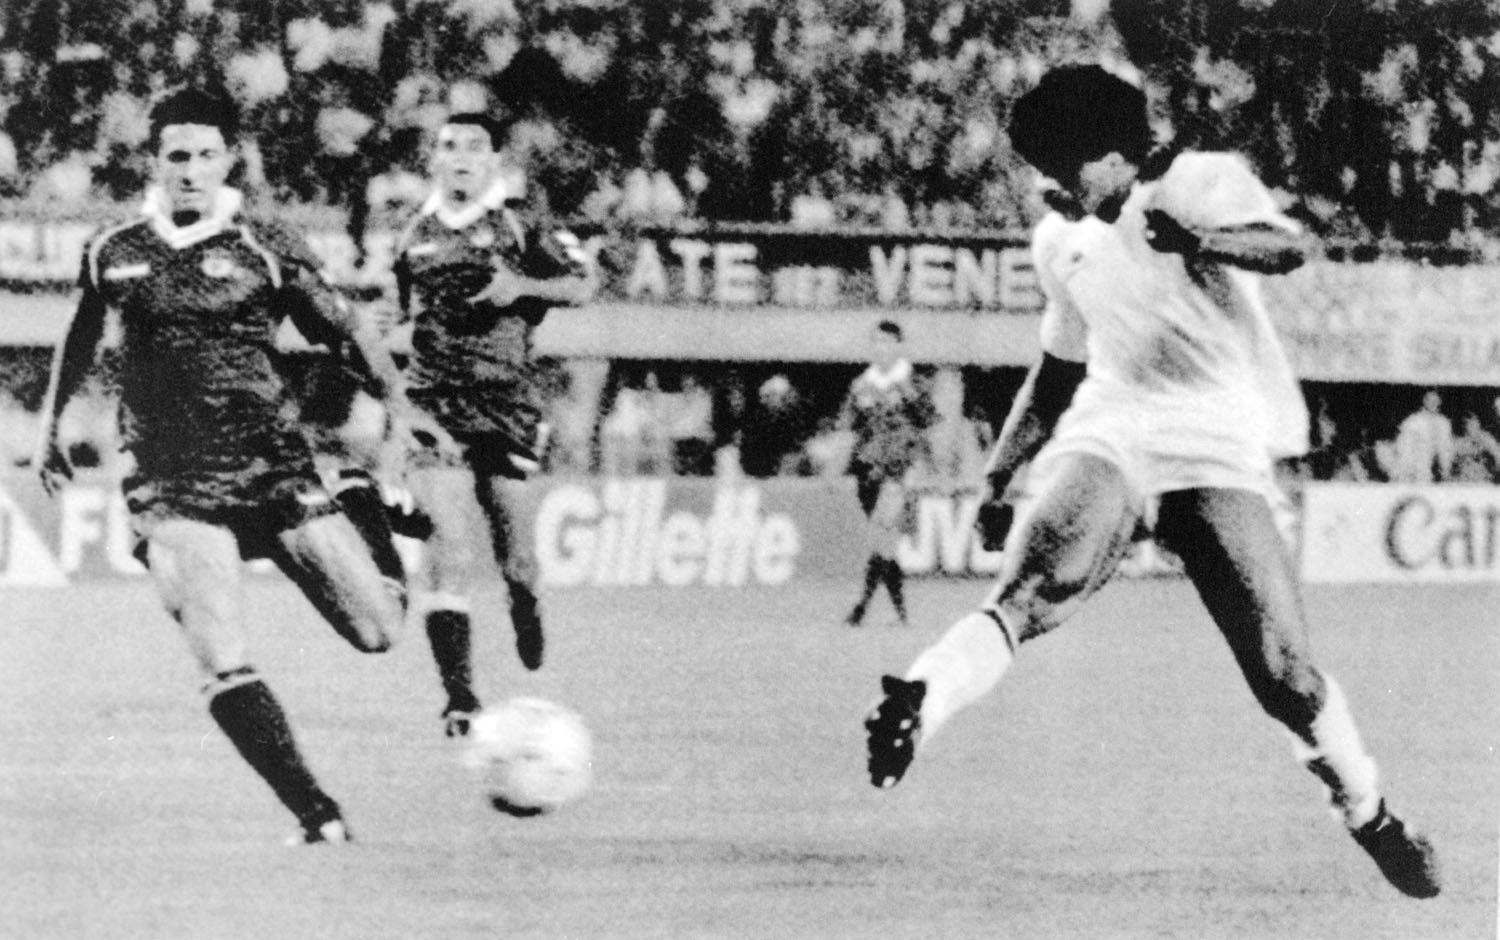 Frank Rijkaard gólt lő a Milan–Benfica BEK-döntőn. Míg Antall József és csapata esküt tett, Rijkaard és csapata a bajnokok bajnoka lett. A Magyar Televízió nem az eskütétellel szórakoztatta, hanem a BEK-döntővel untatta nézőit